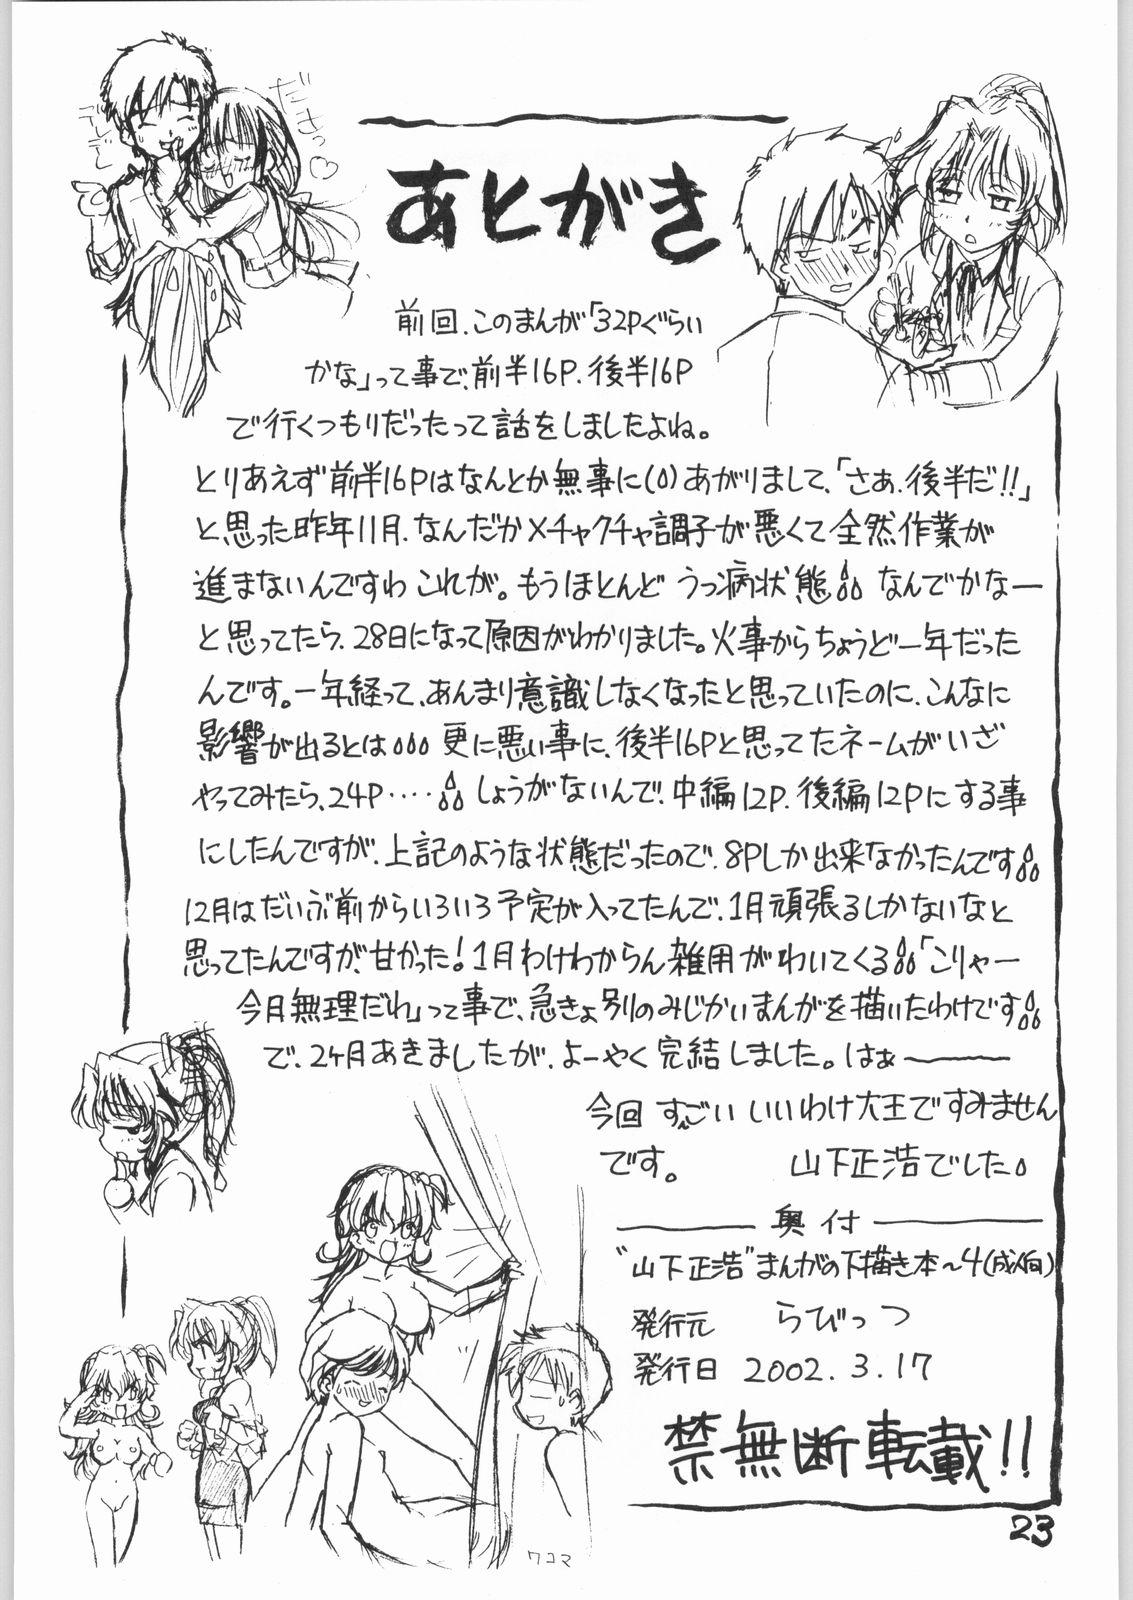 Yamashita Masahiro Manga no Shitagaki Hon 4 22